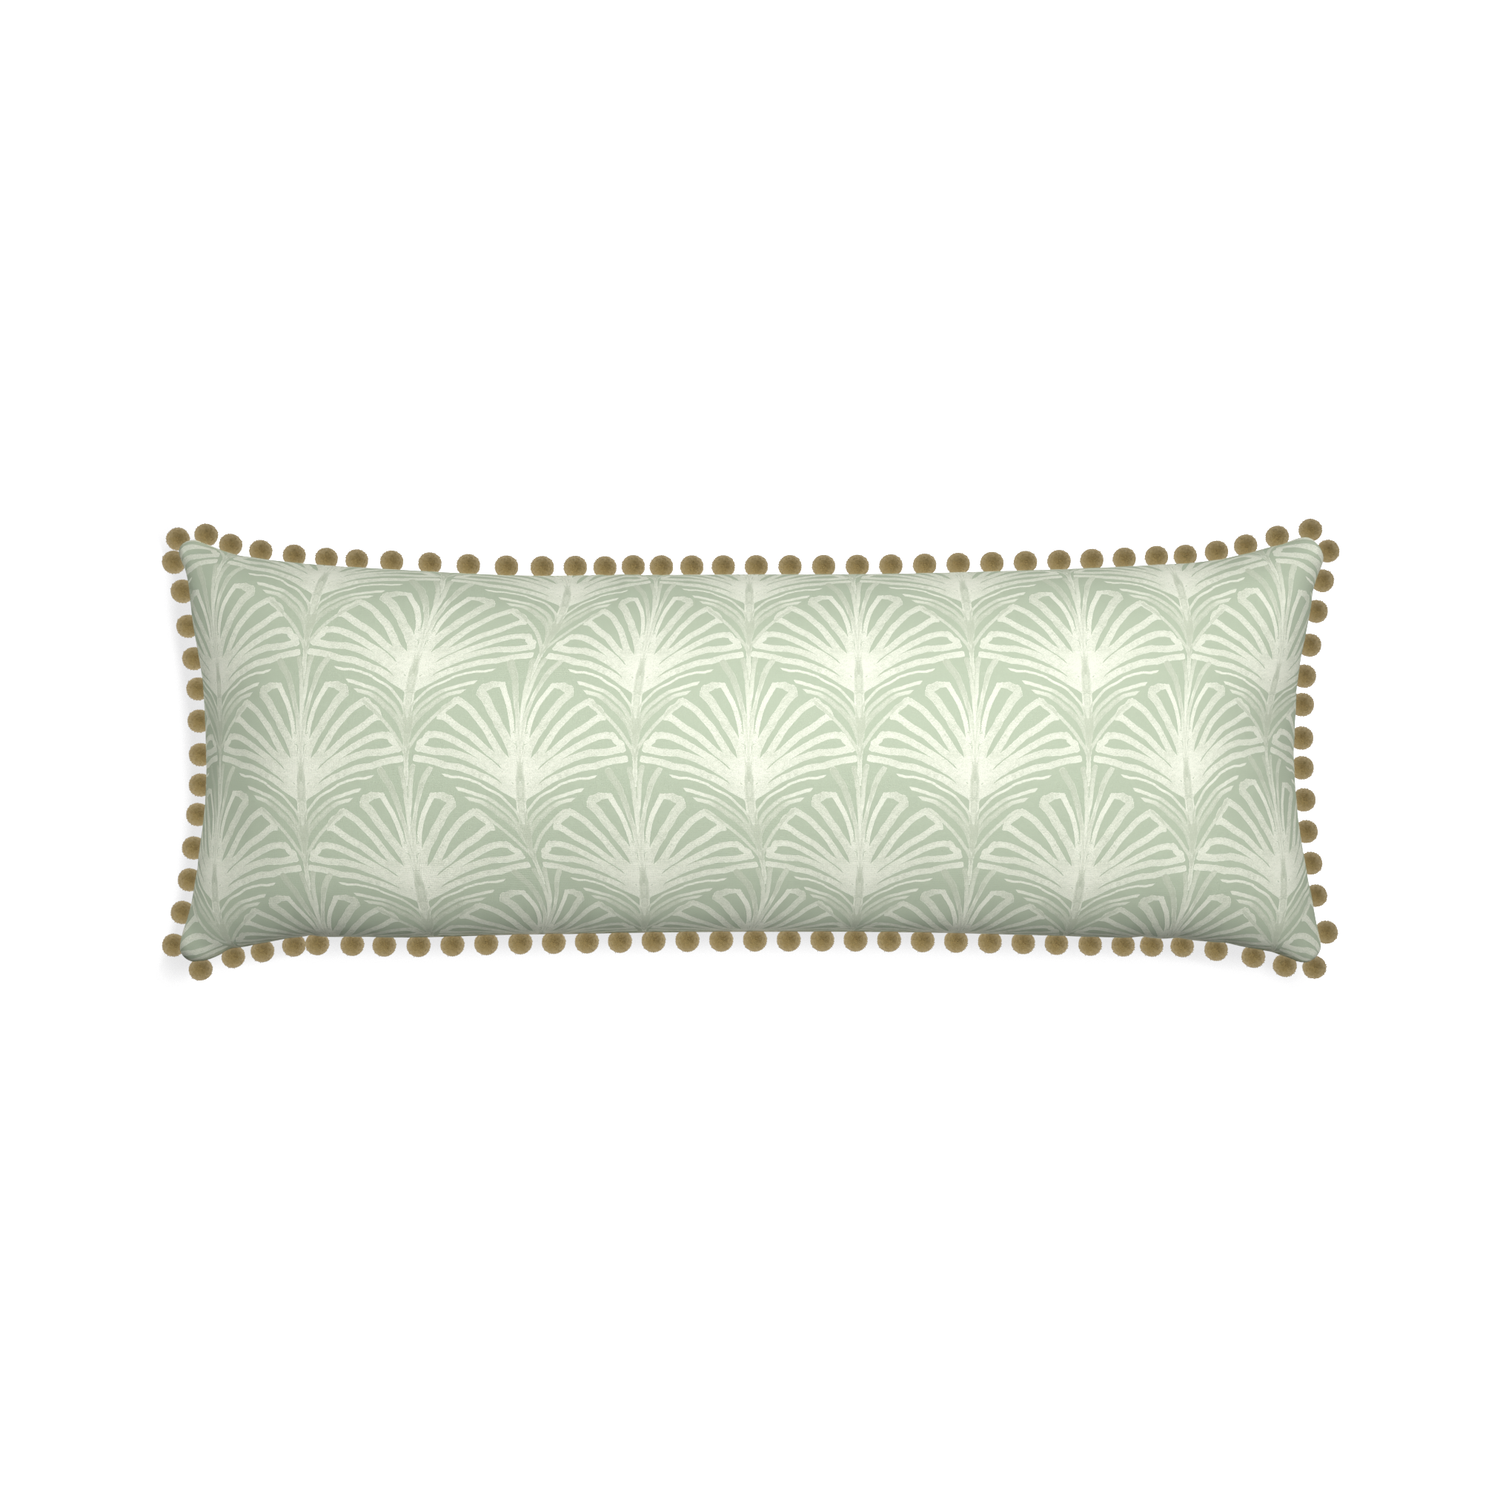 Xl-lumbar suzy sage custom pillow with olive pom pom on white background